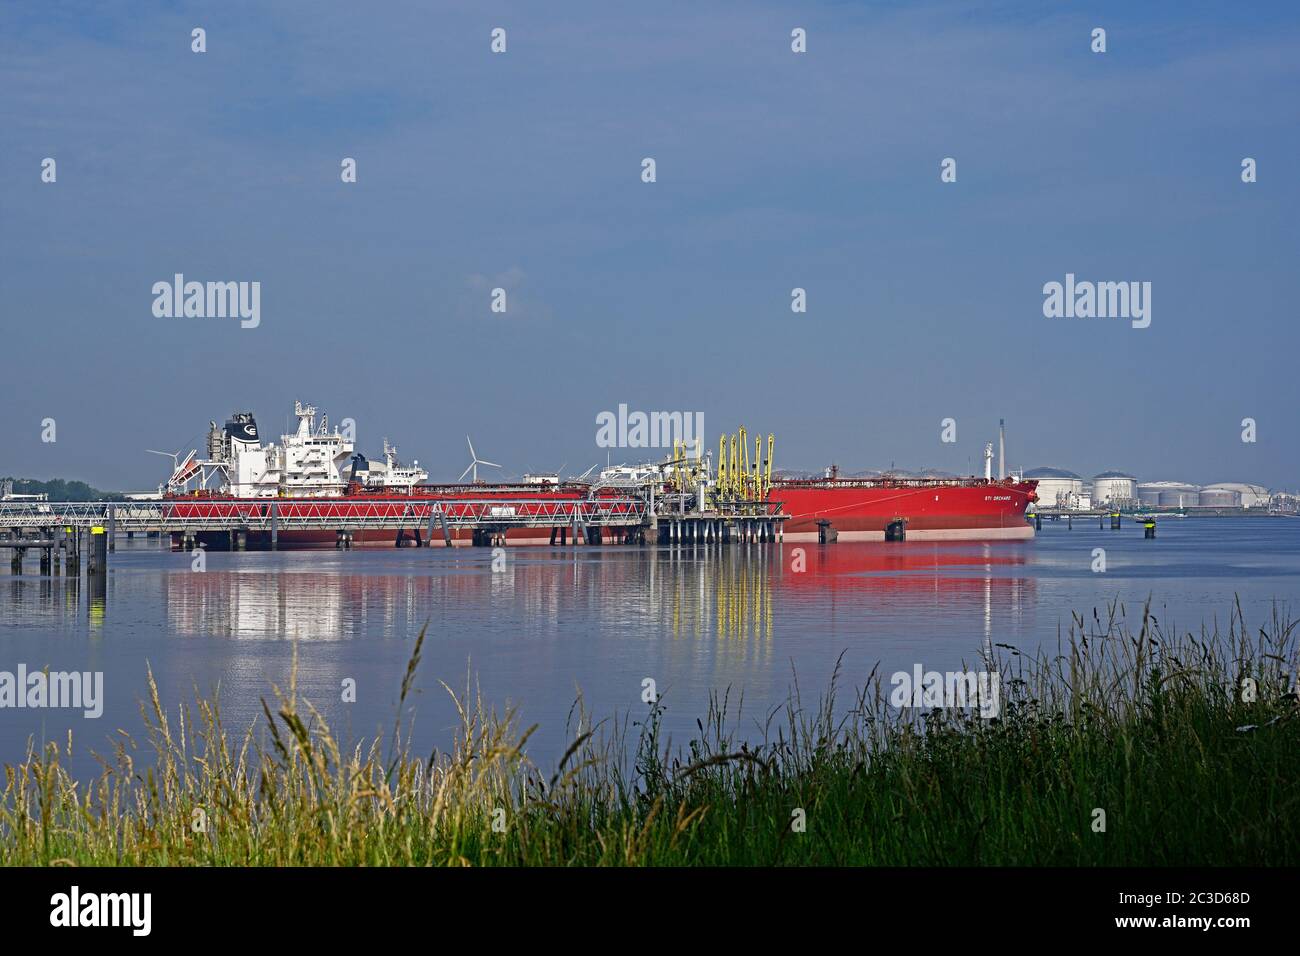 port de rotterdam, pays-bas - 2020.06.17 we : pétrolier brut sti orchard (imo# 9690834) (109999 dwt) déchargeant au terminal 7 de vopak pétroleumshont Banque D'Images